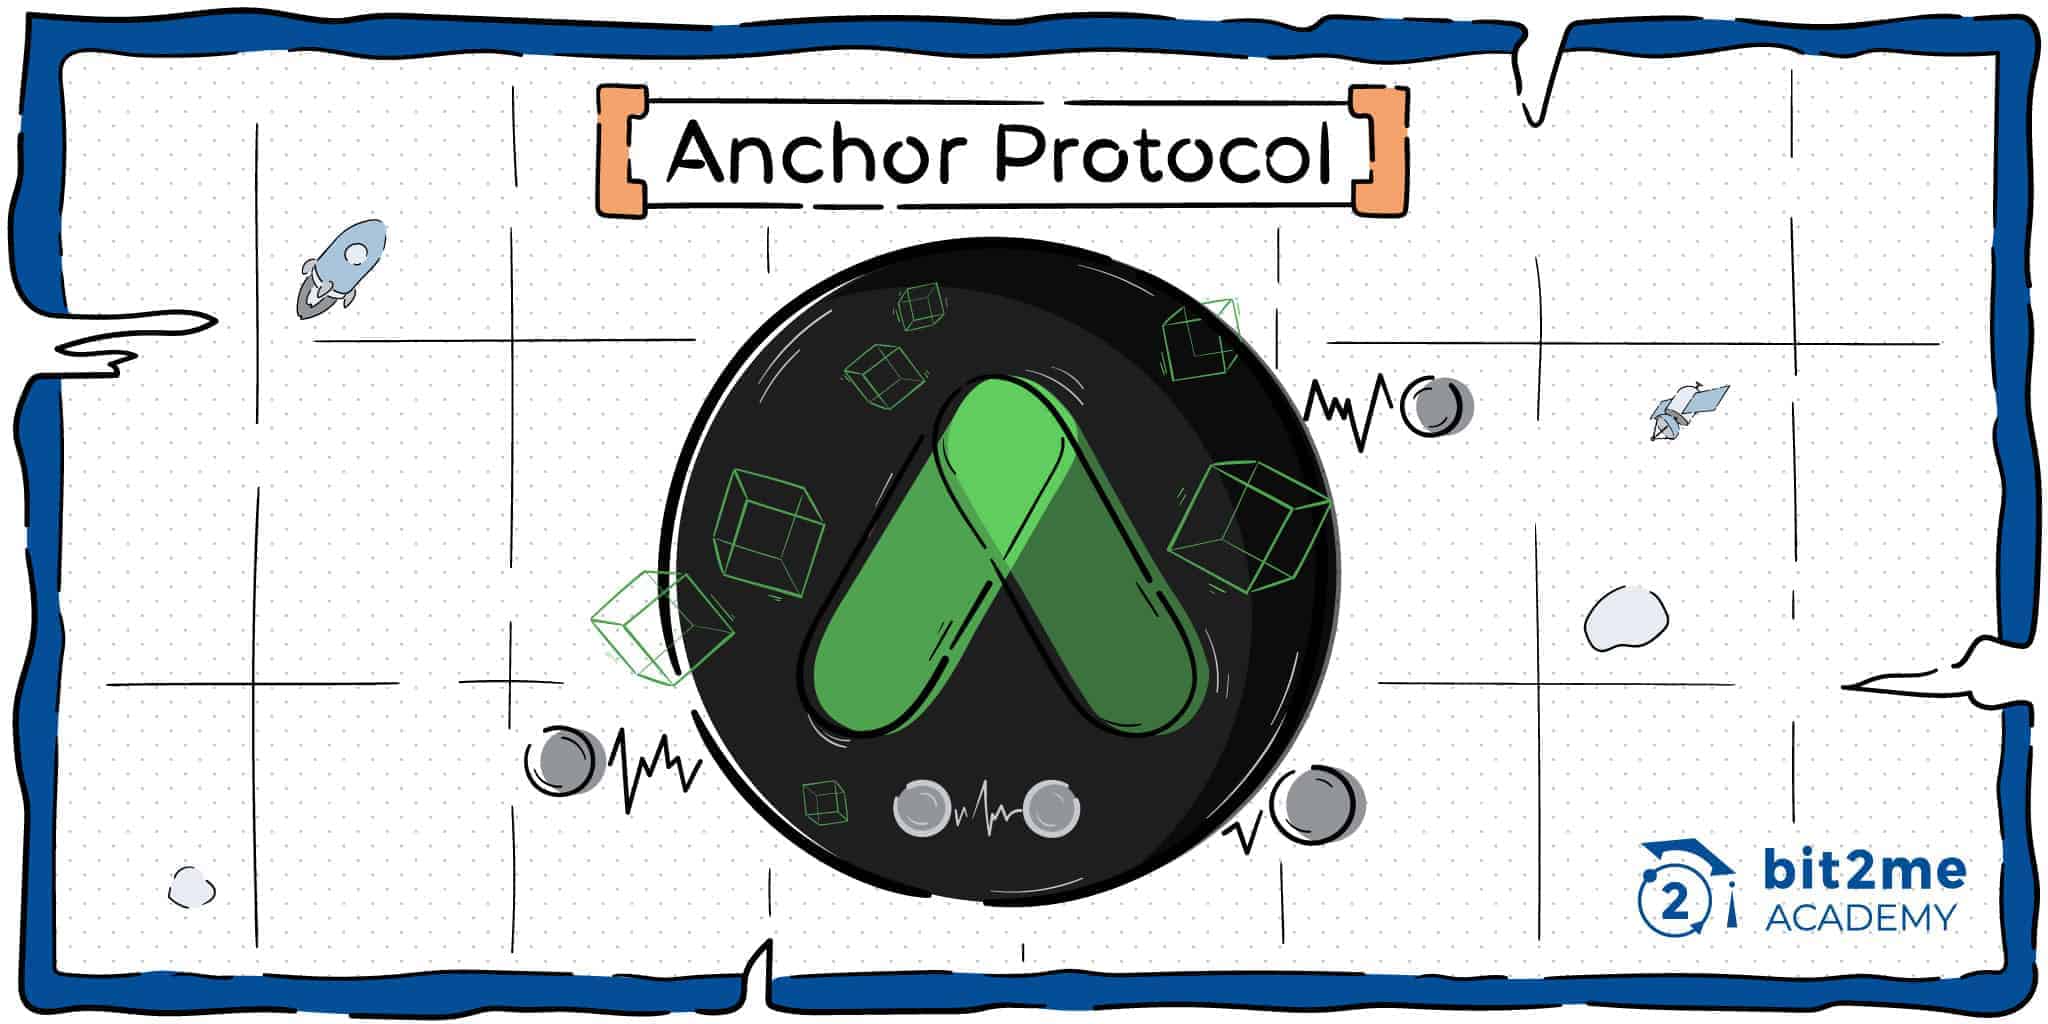 Anchor protocol